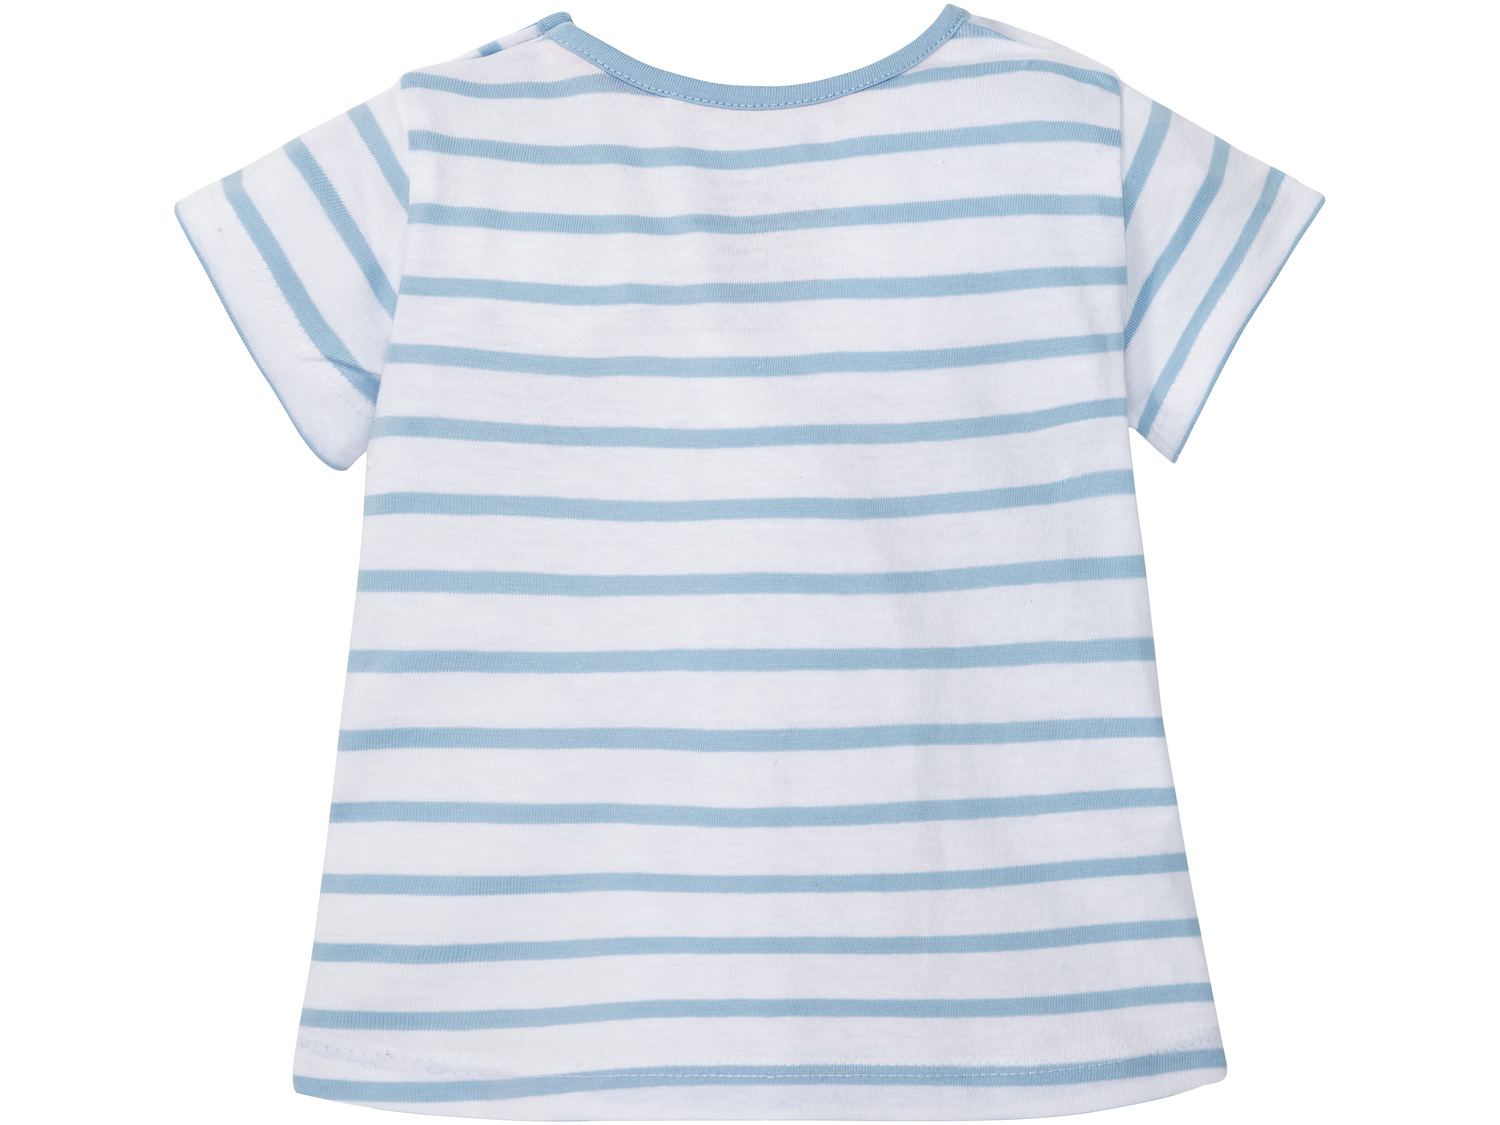 Koszulka dziewczęca Lupilu, cena 7,99 PLN 
- 100% bawełny
- rozmiary: 74-92
Dostępne ...